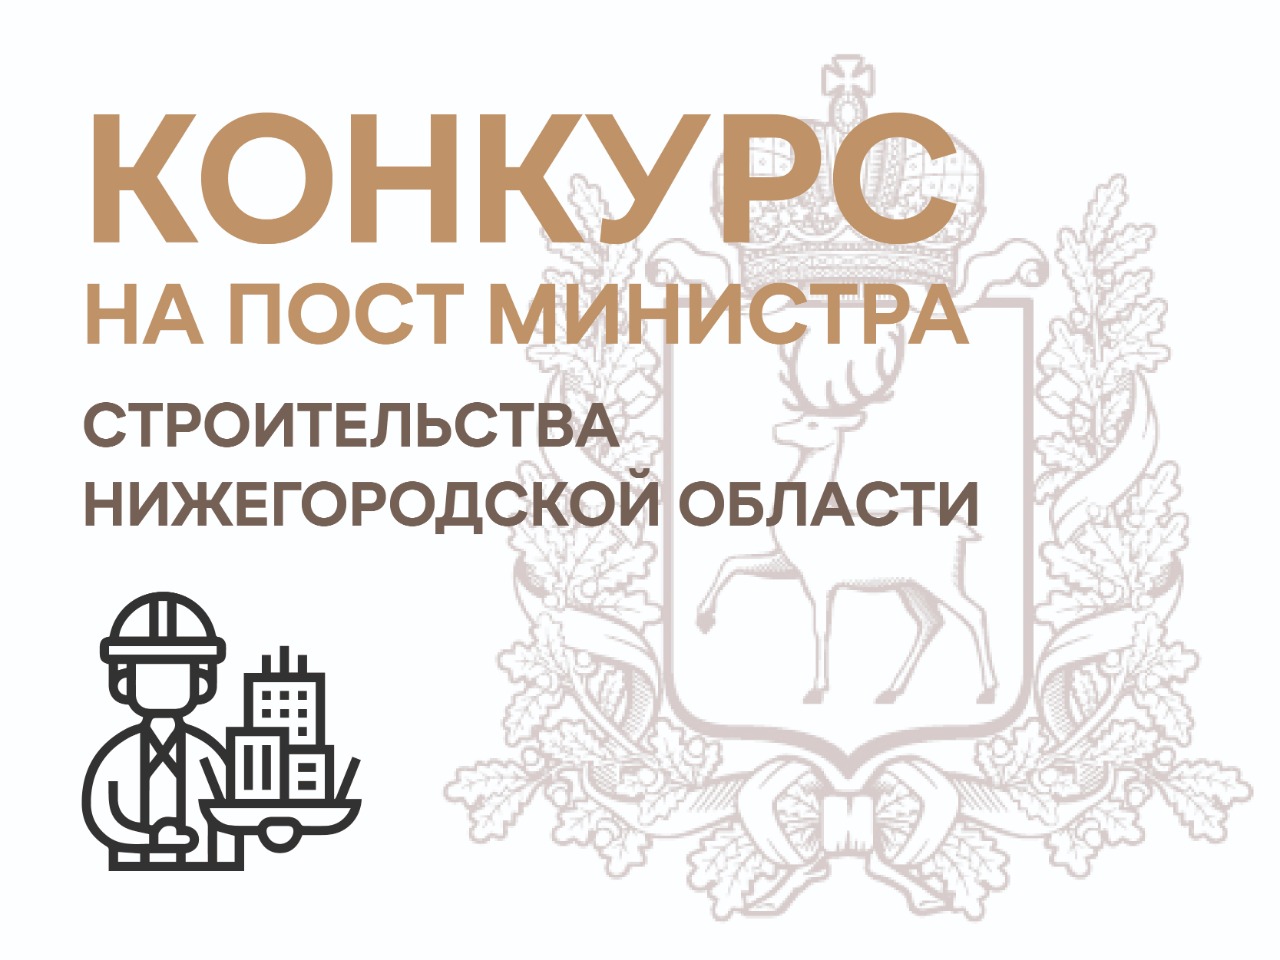 Министра строительства Нижегородской области выберут на конкурсной основе